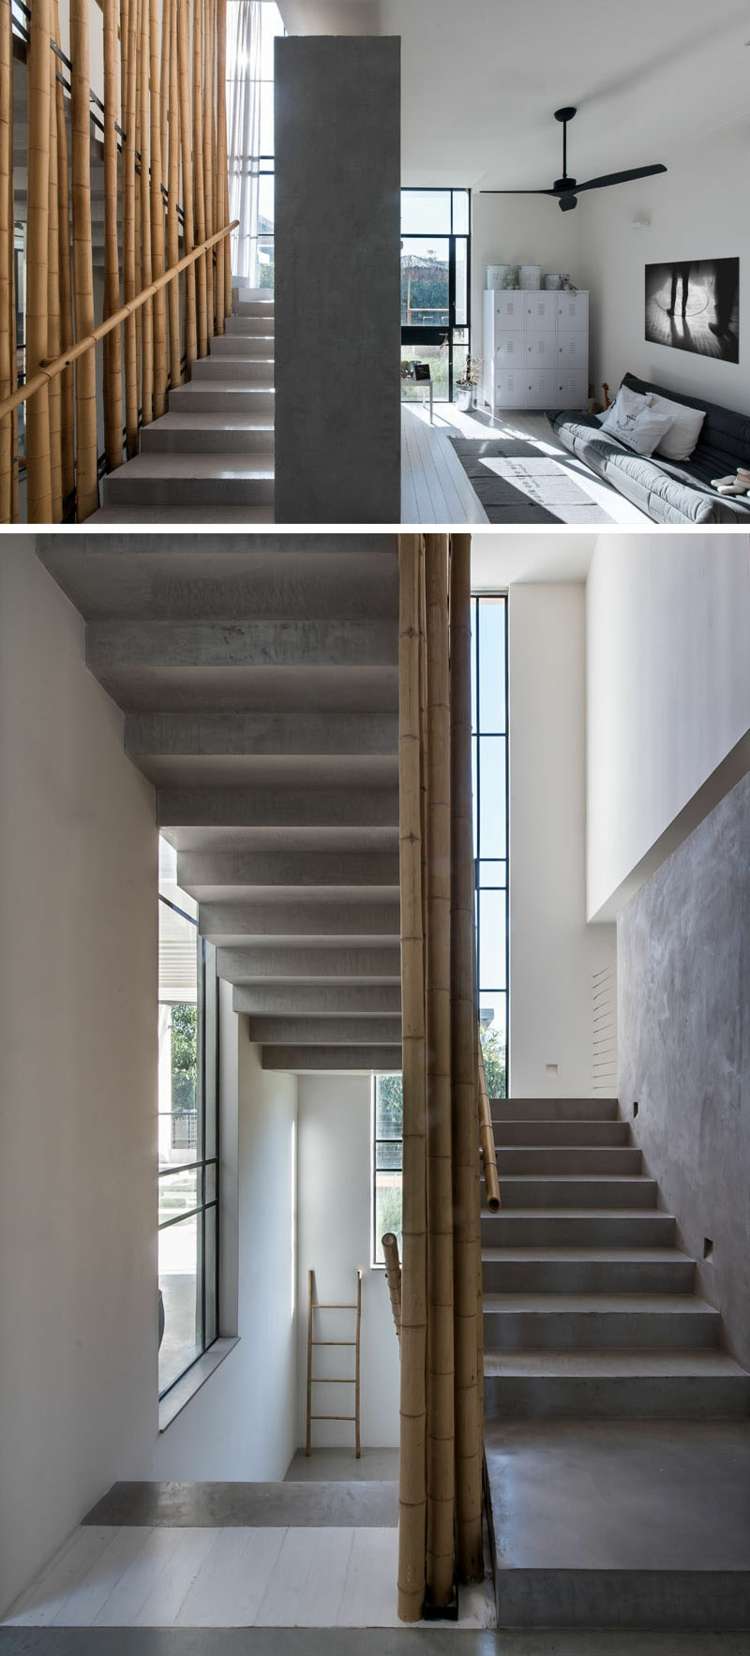 Hængende stol-sving-trappe-beton-tør bambus-træ stige-loftsventilator